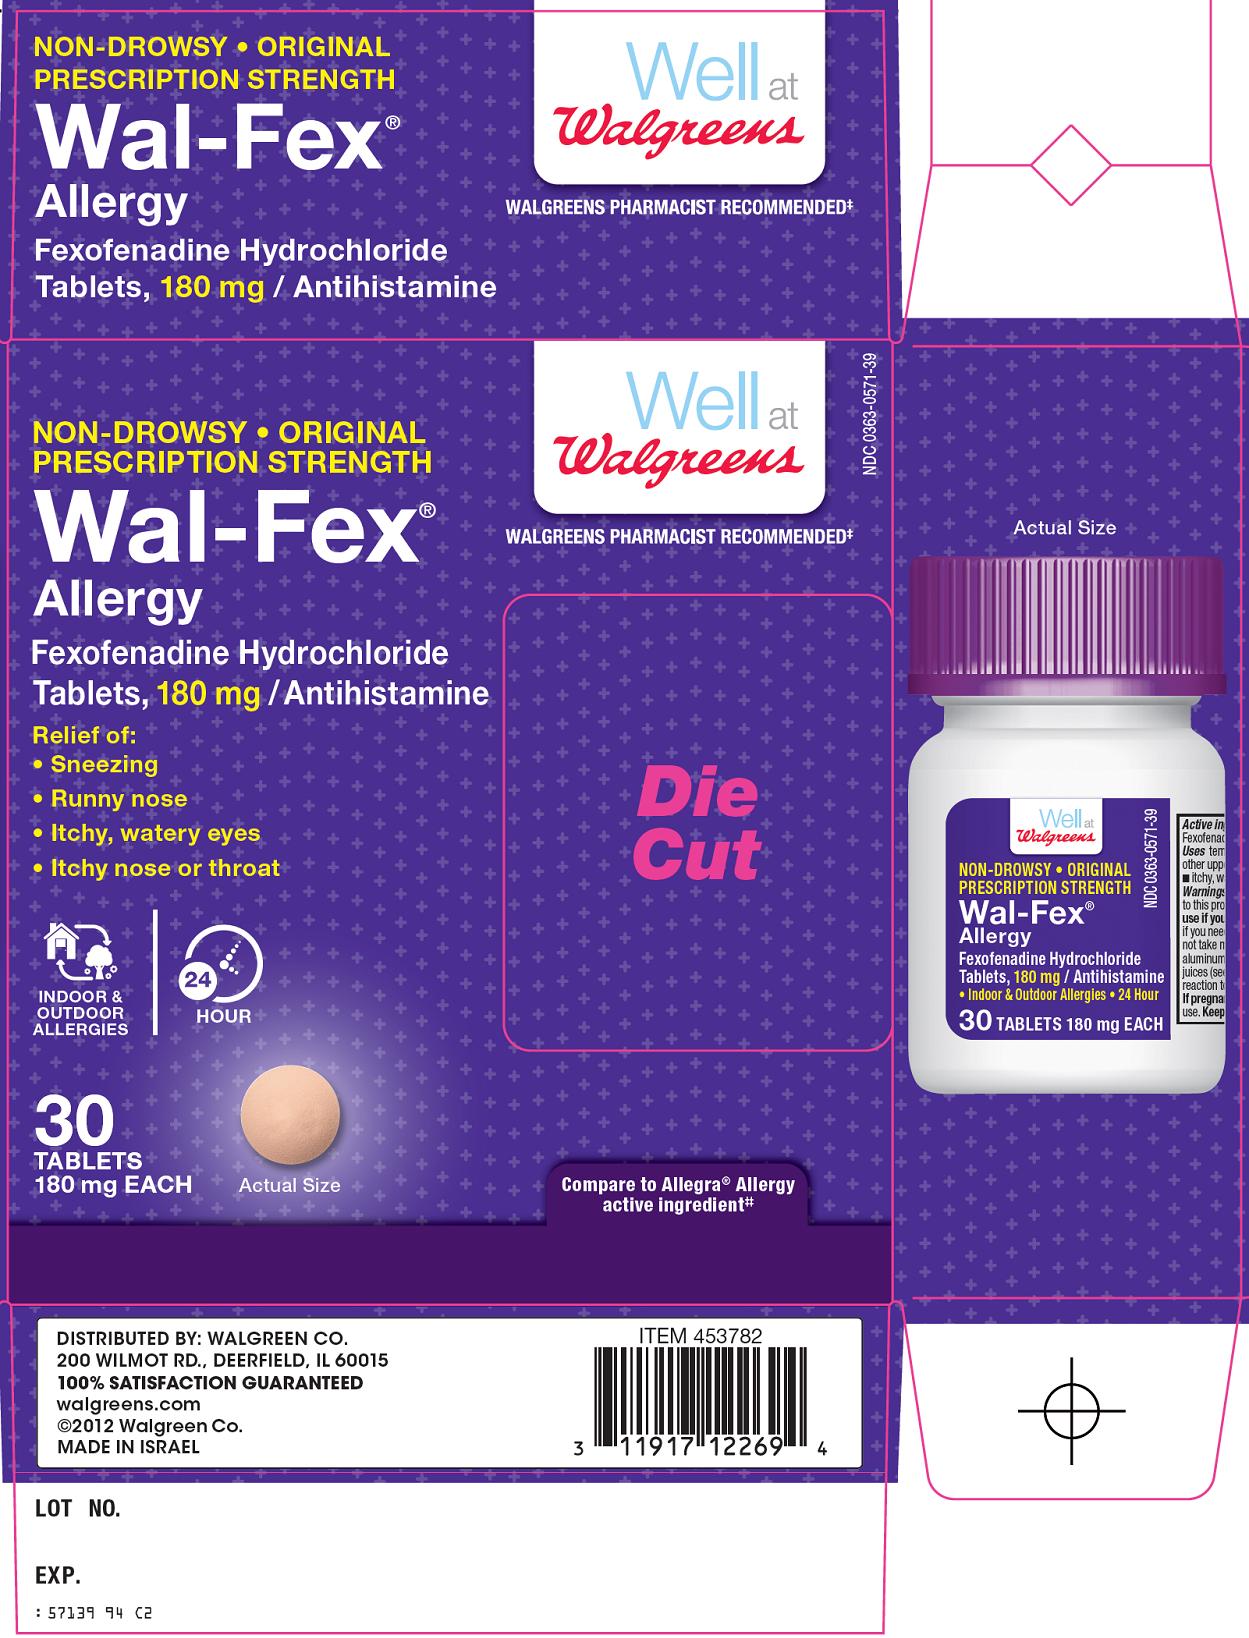 Wal-Fex Carton Image 1